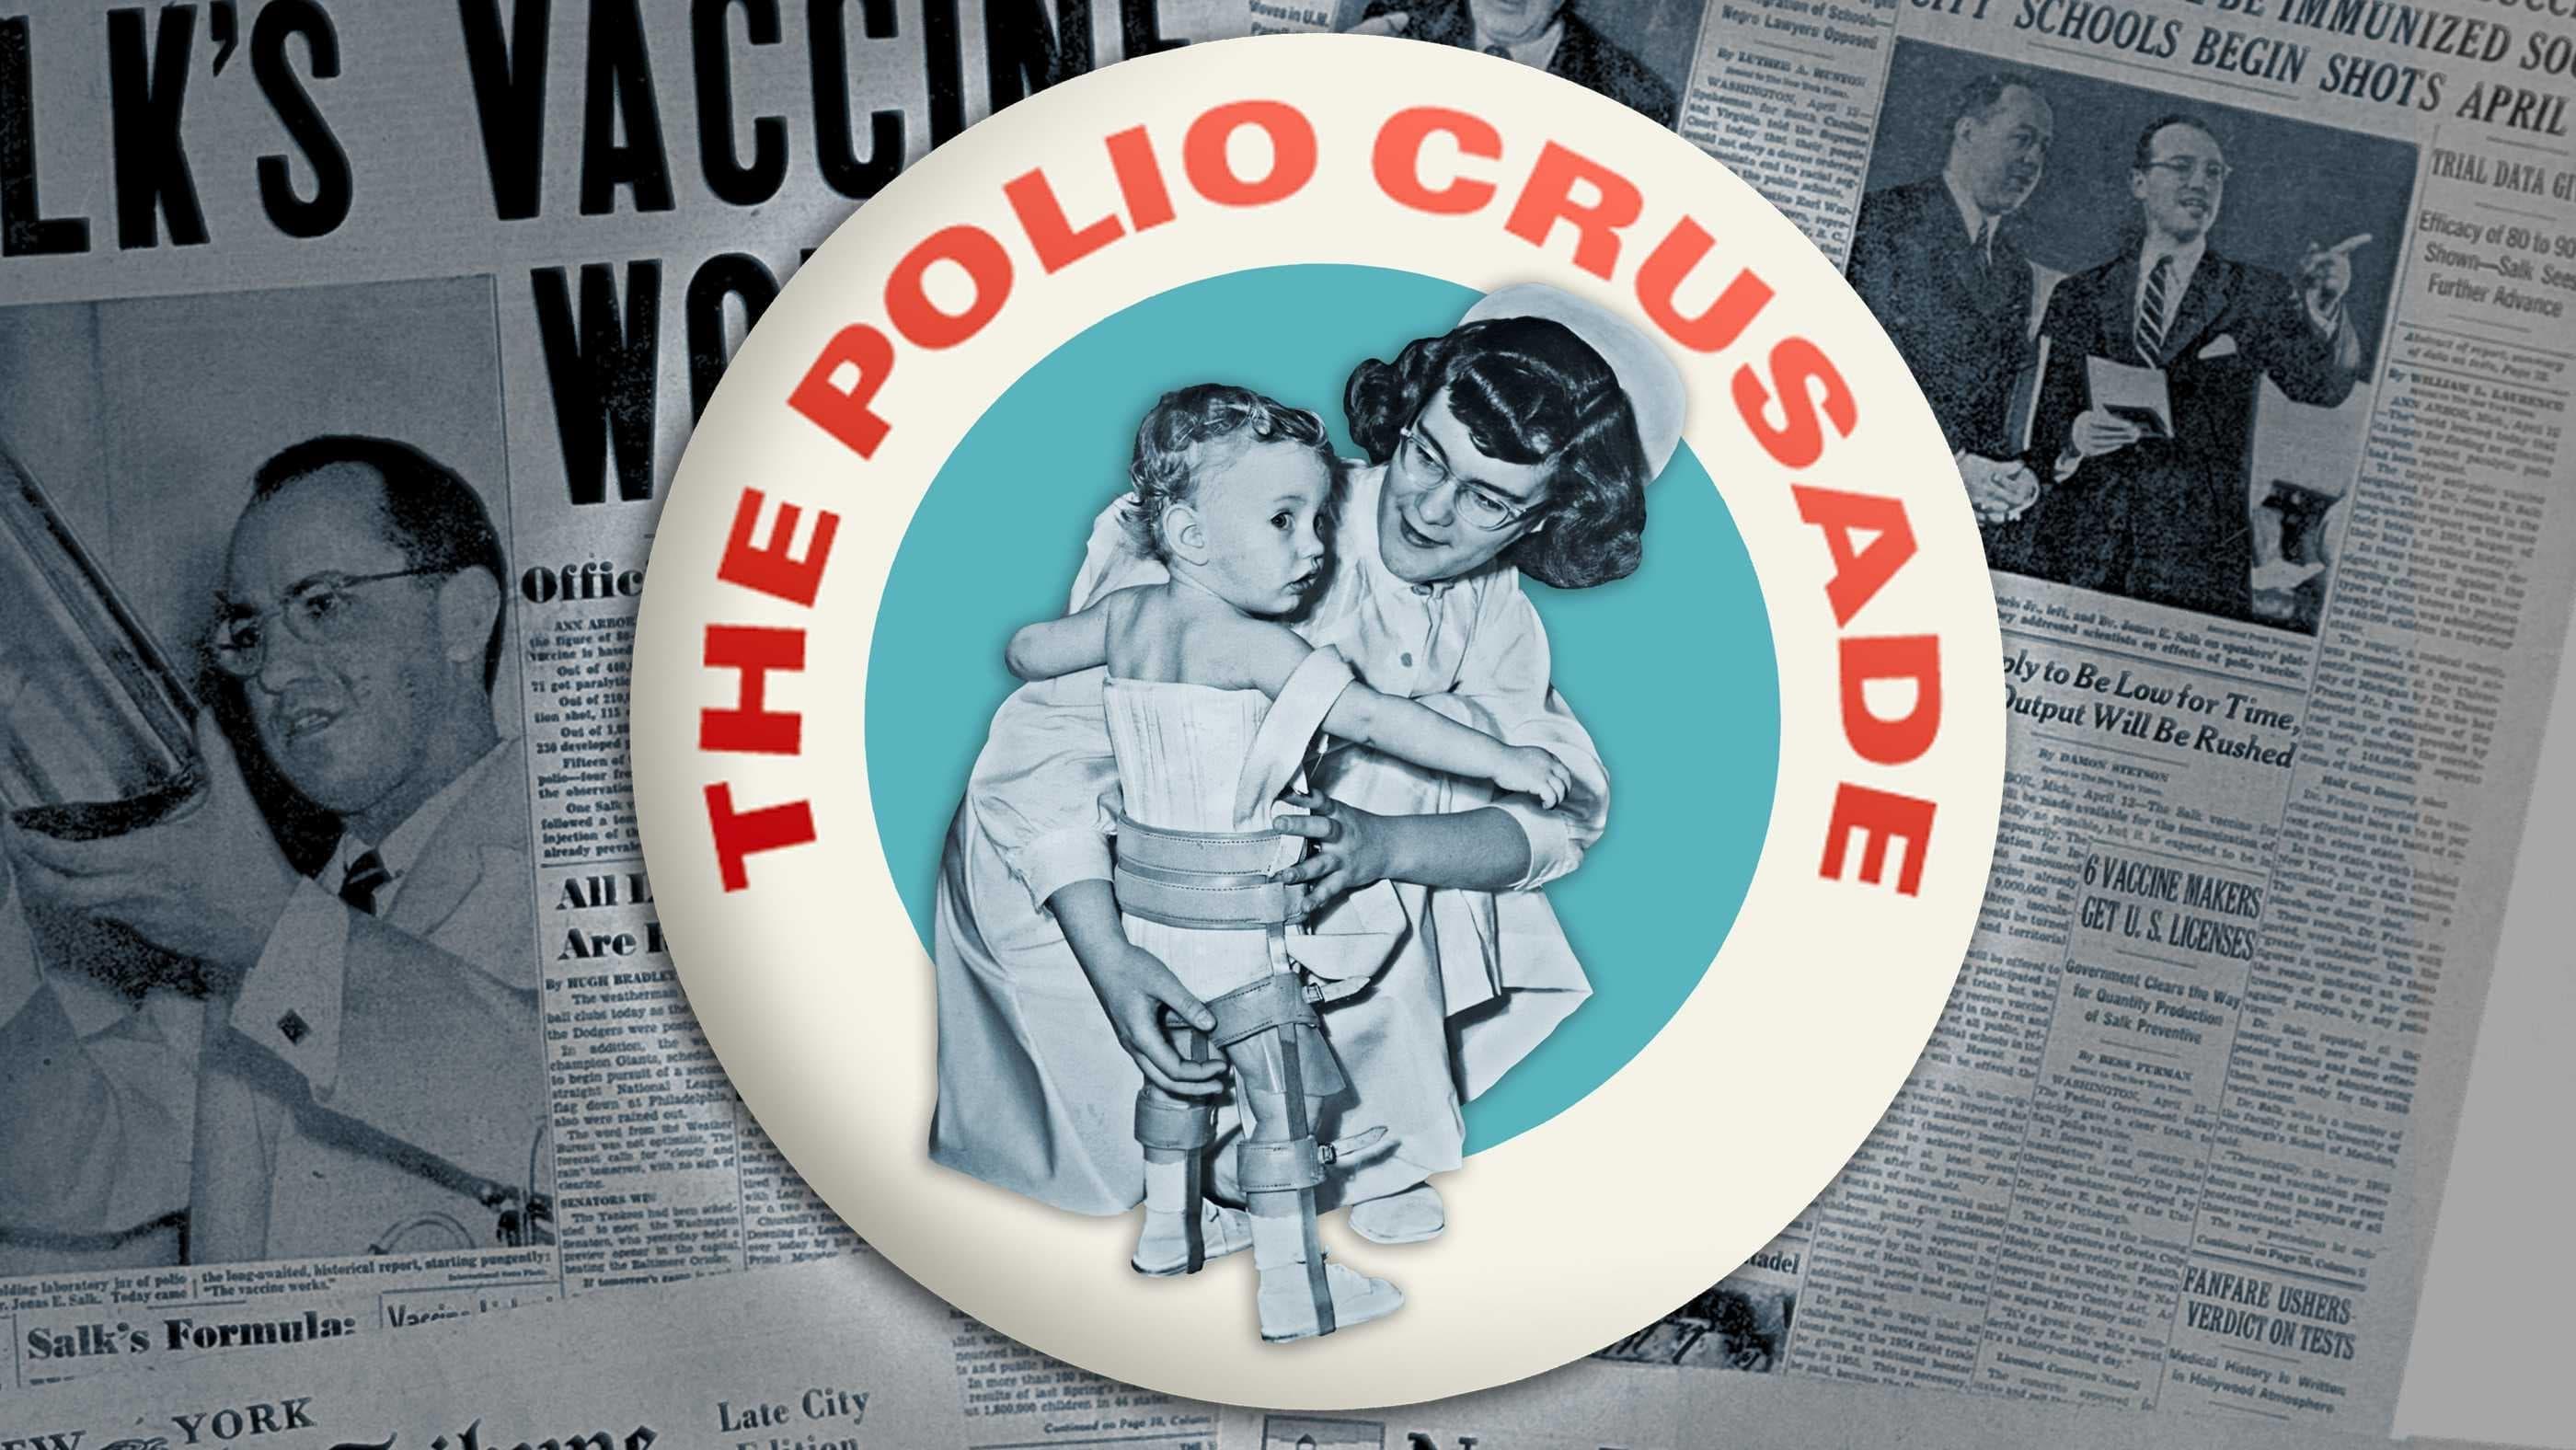 The Polio Crusade backdrop